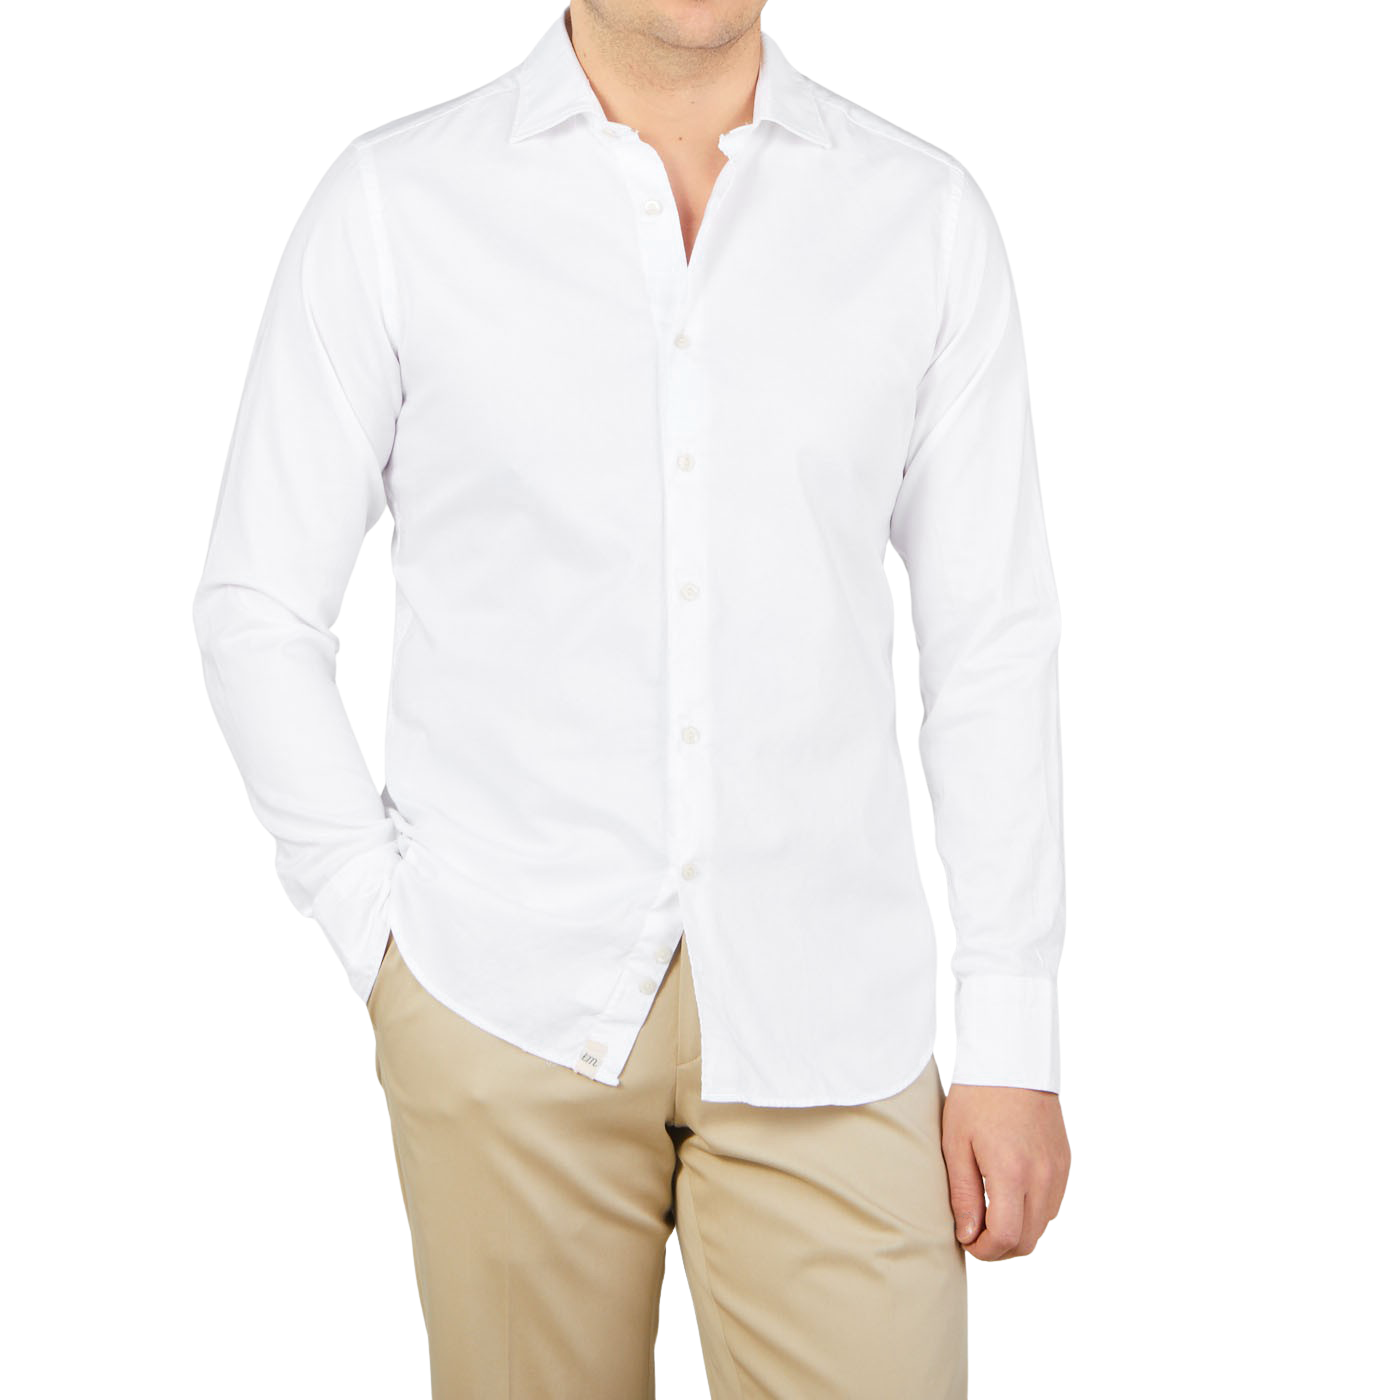 Tintoria Mattei White Cotton Oxford Casual Shirt Front